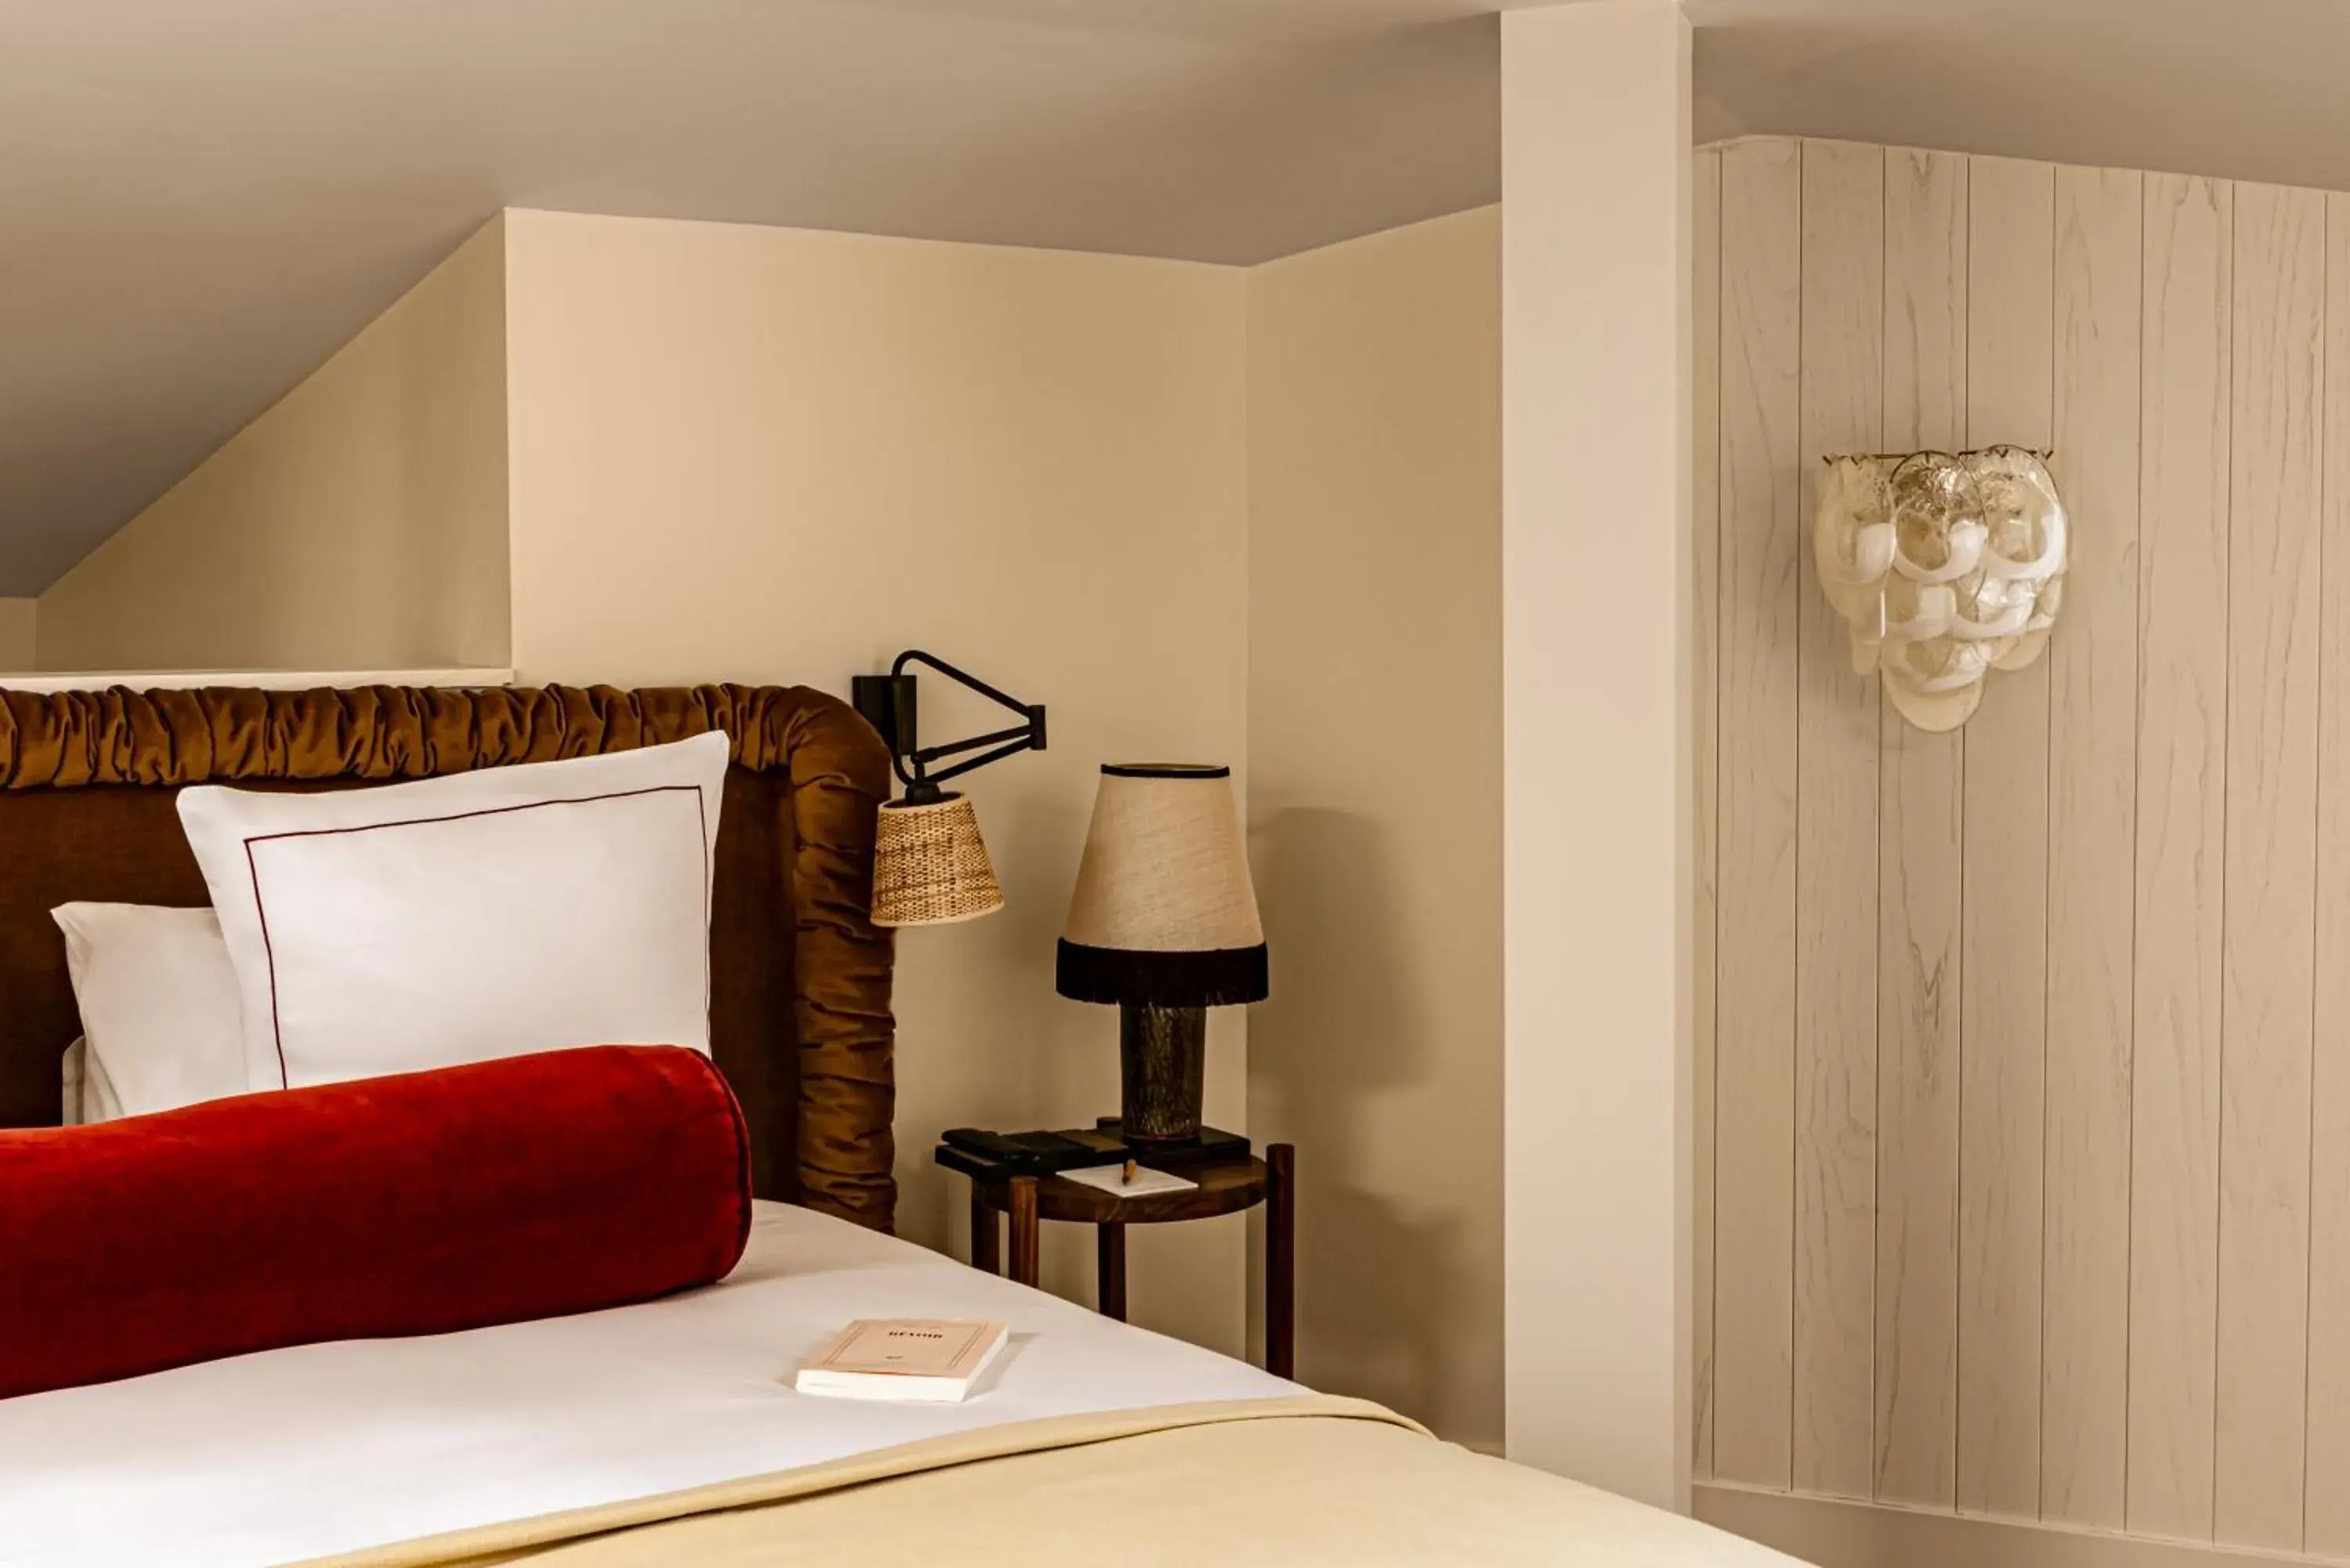 Bedroom, Bed in Château des Fleurs - Hôtel & Spa - Paris Champs-Elysées